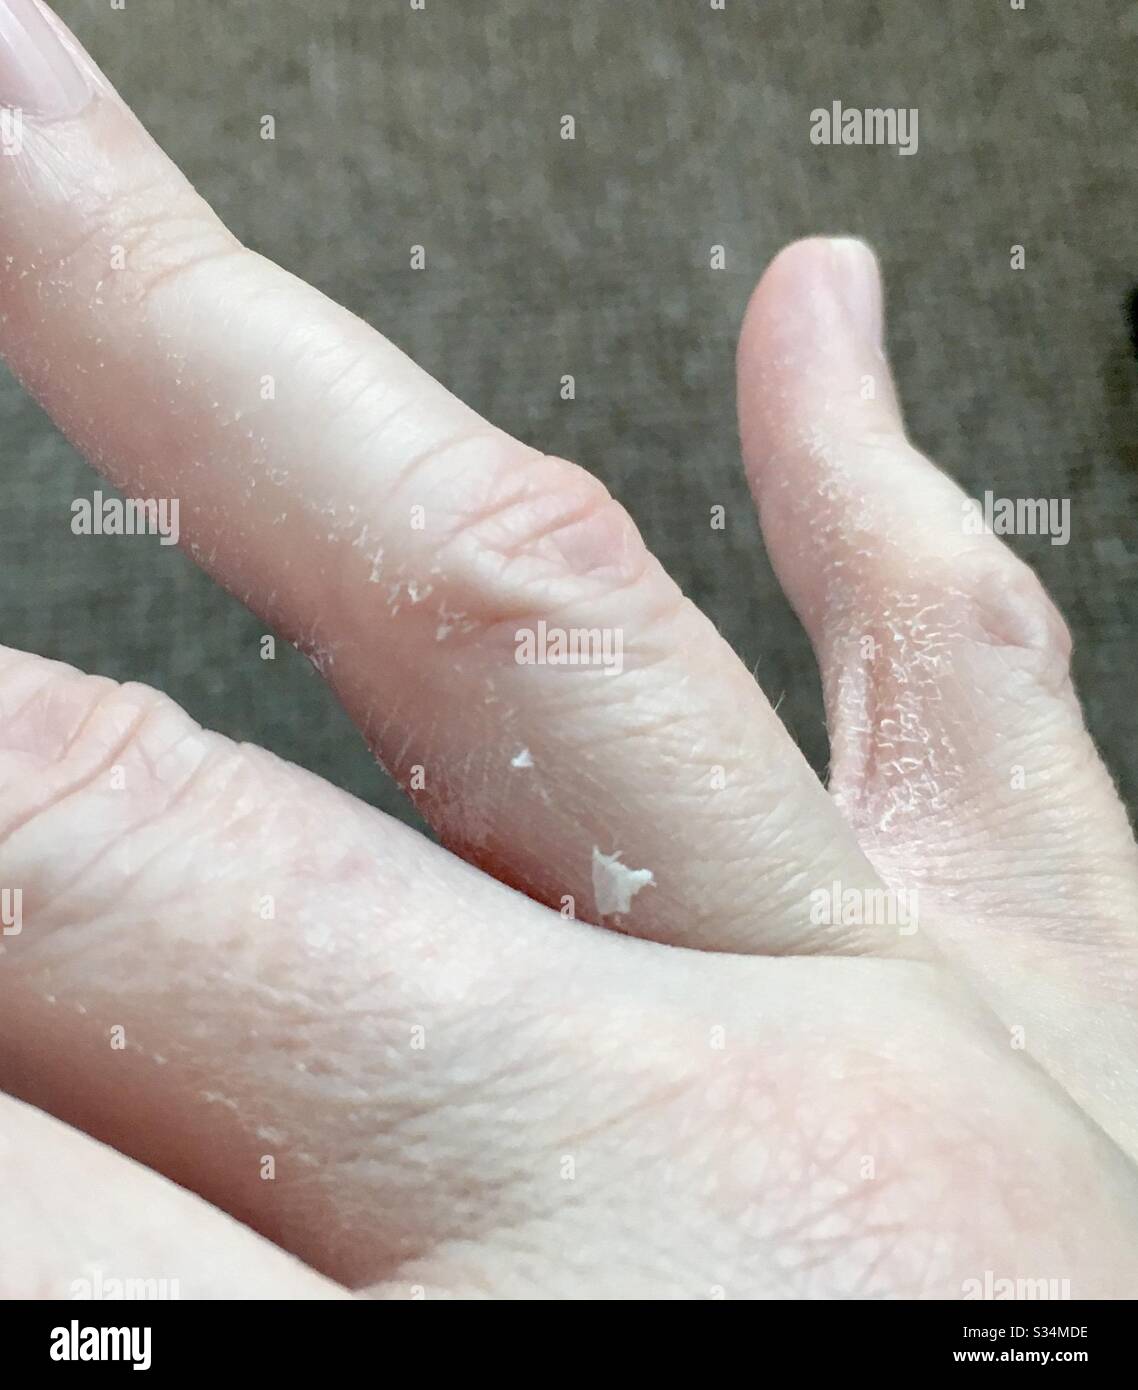 Enfermedad autoinmunitaria: Descamación de las manos irritada por el lavado de las manos durante el brote de covid19 coronavirus Foto de stock